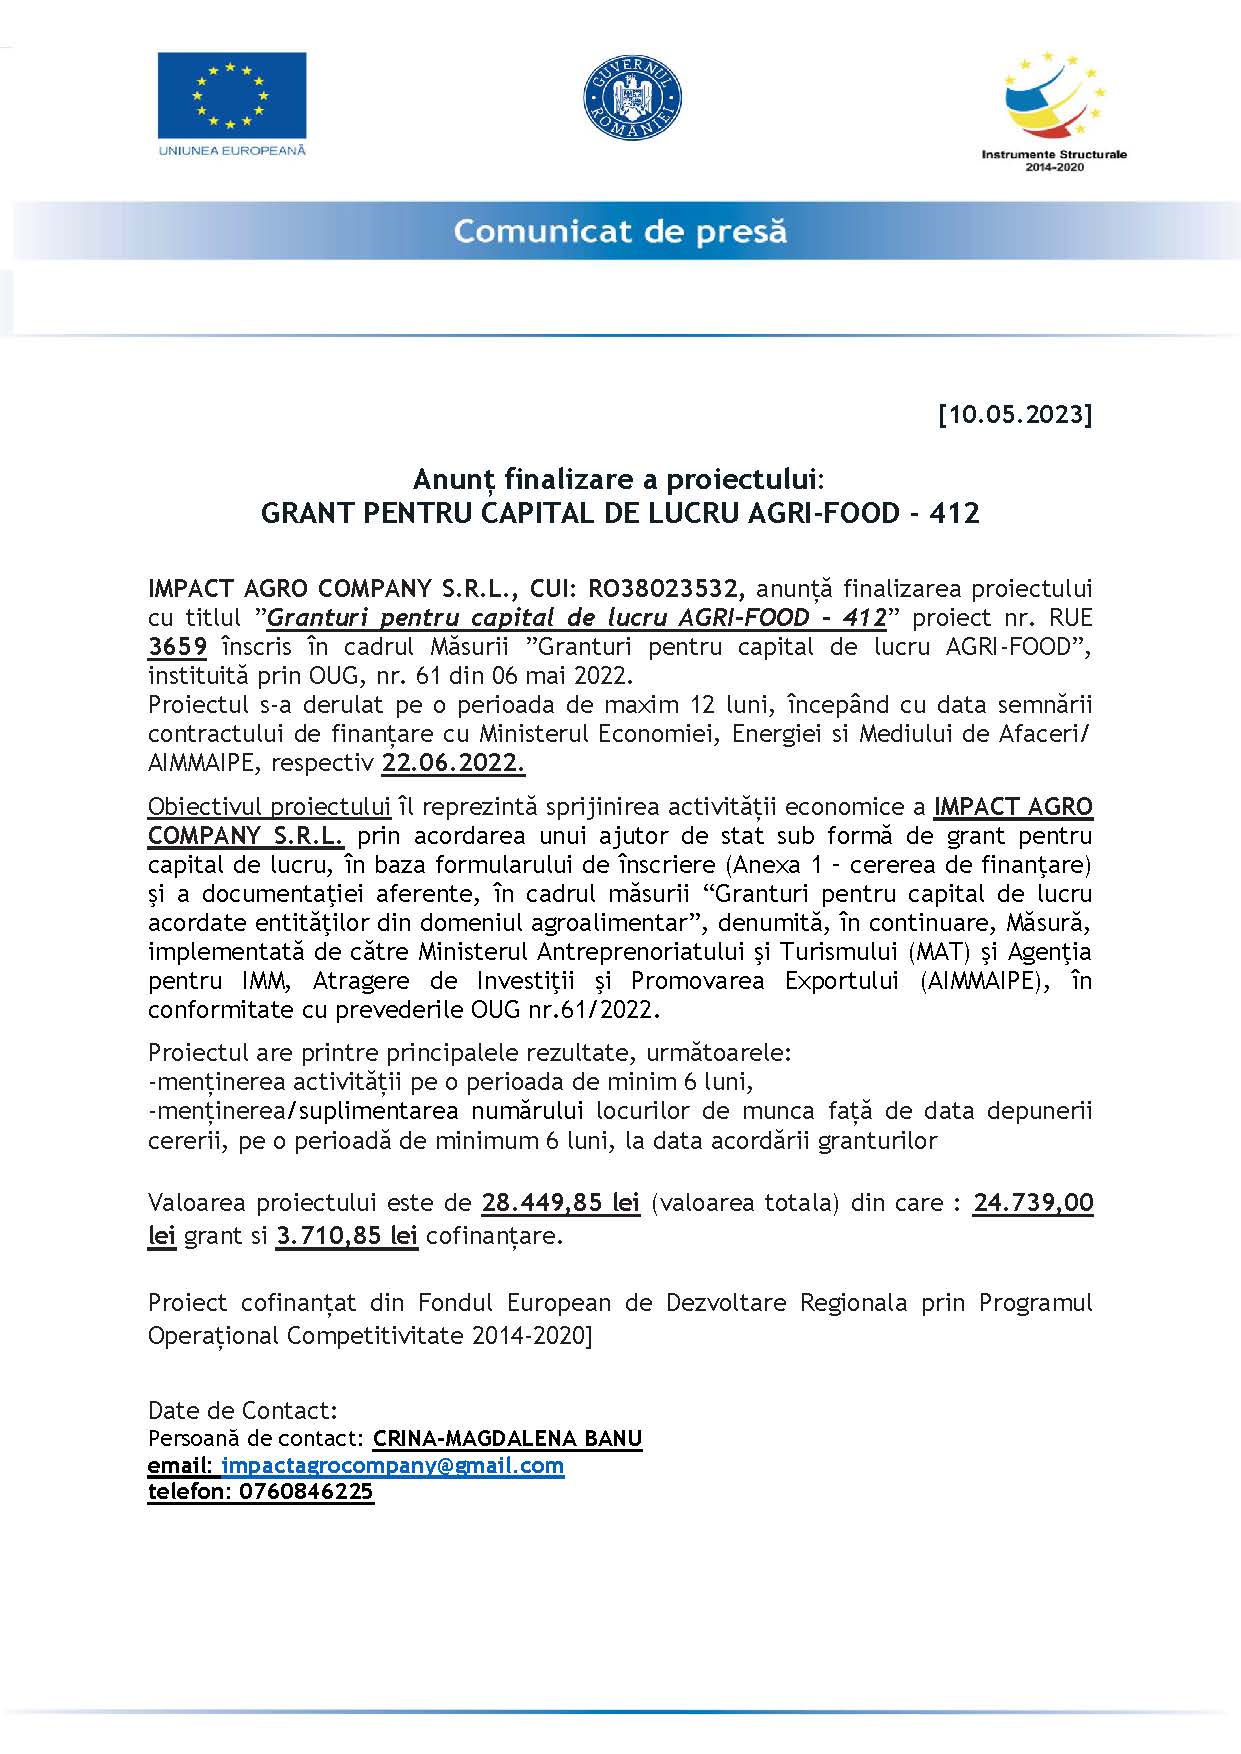 Anunț finalizare a proiectului: GRANT PENTRU CAPITAL DE LUCRU AGRI-FOOD - 412 10.05.2023